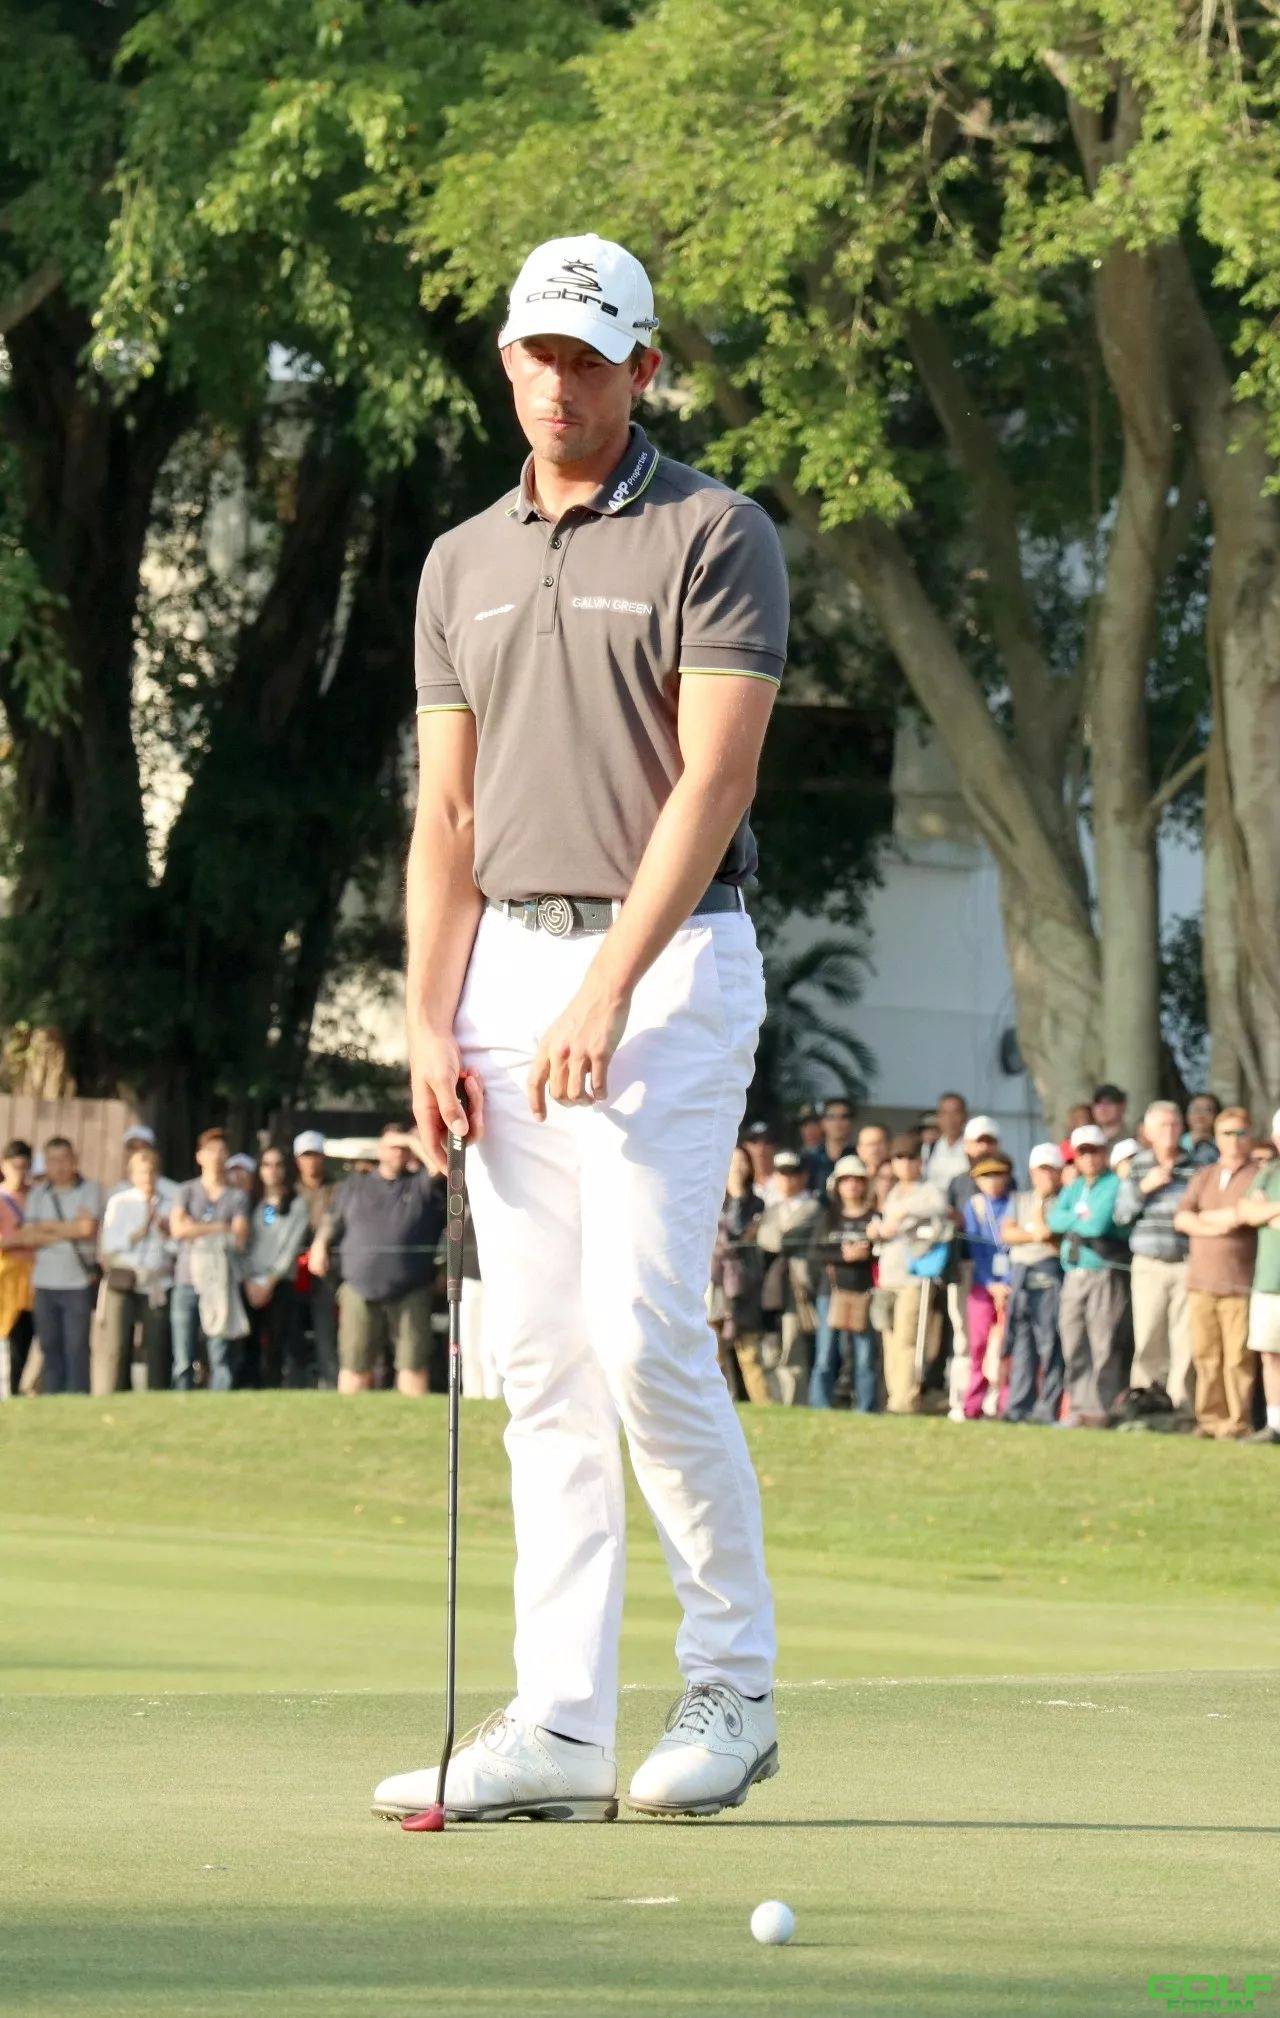 奧爾斯比首次勇奪「瑞銀香港高爾夫球公開賽」冠軍